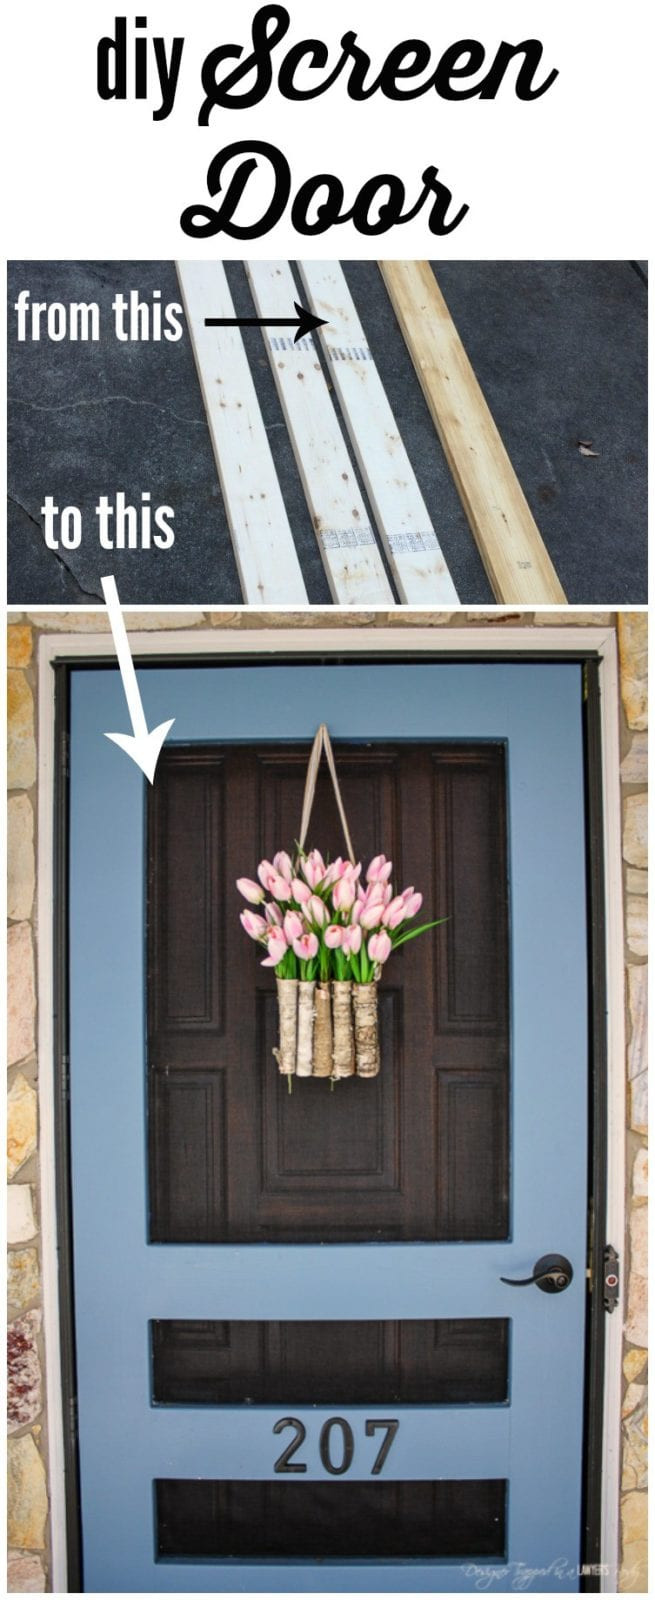 Best ideas about DIY Screen Door
. Save or Pin DIY Screen Door Tutorial Now.